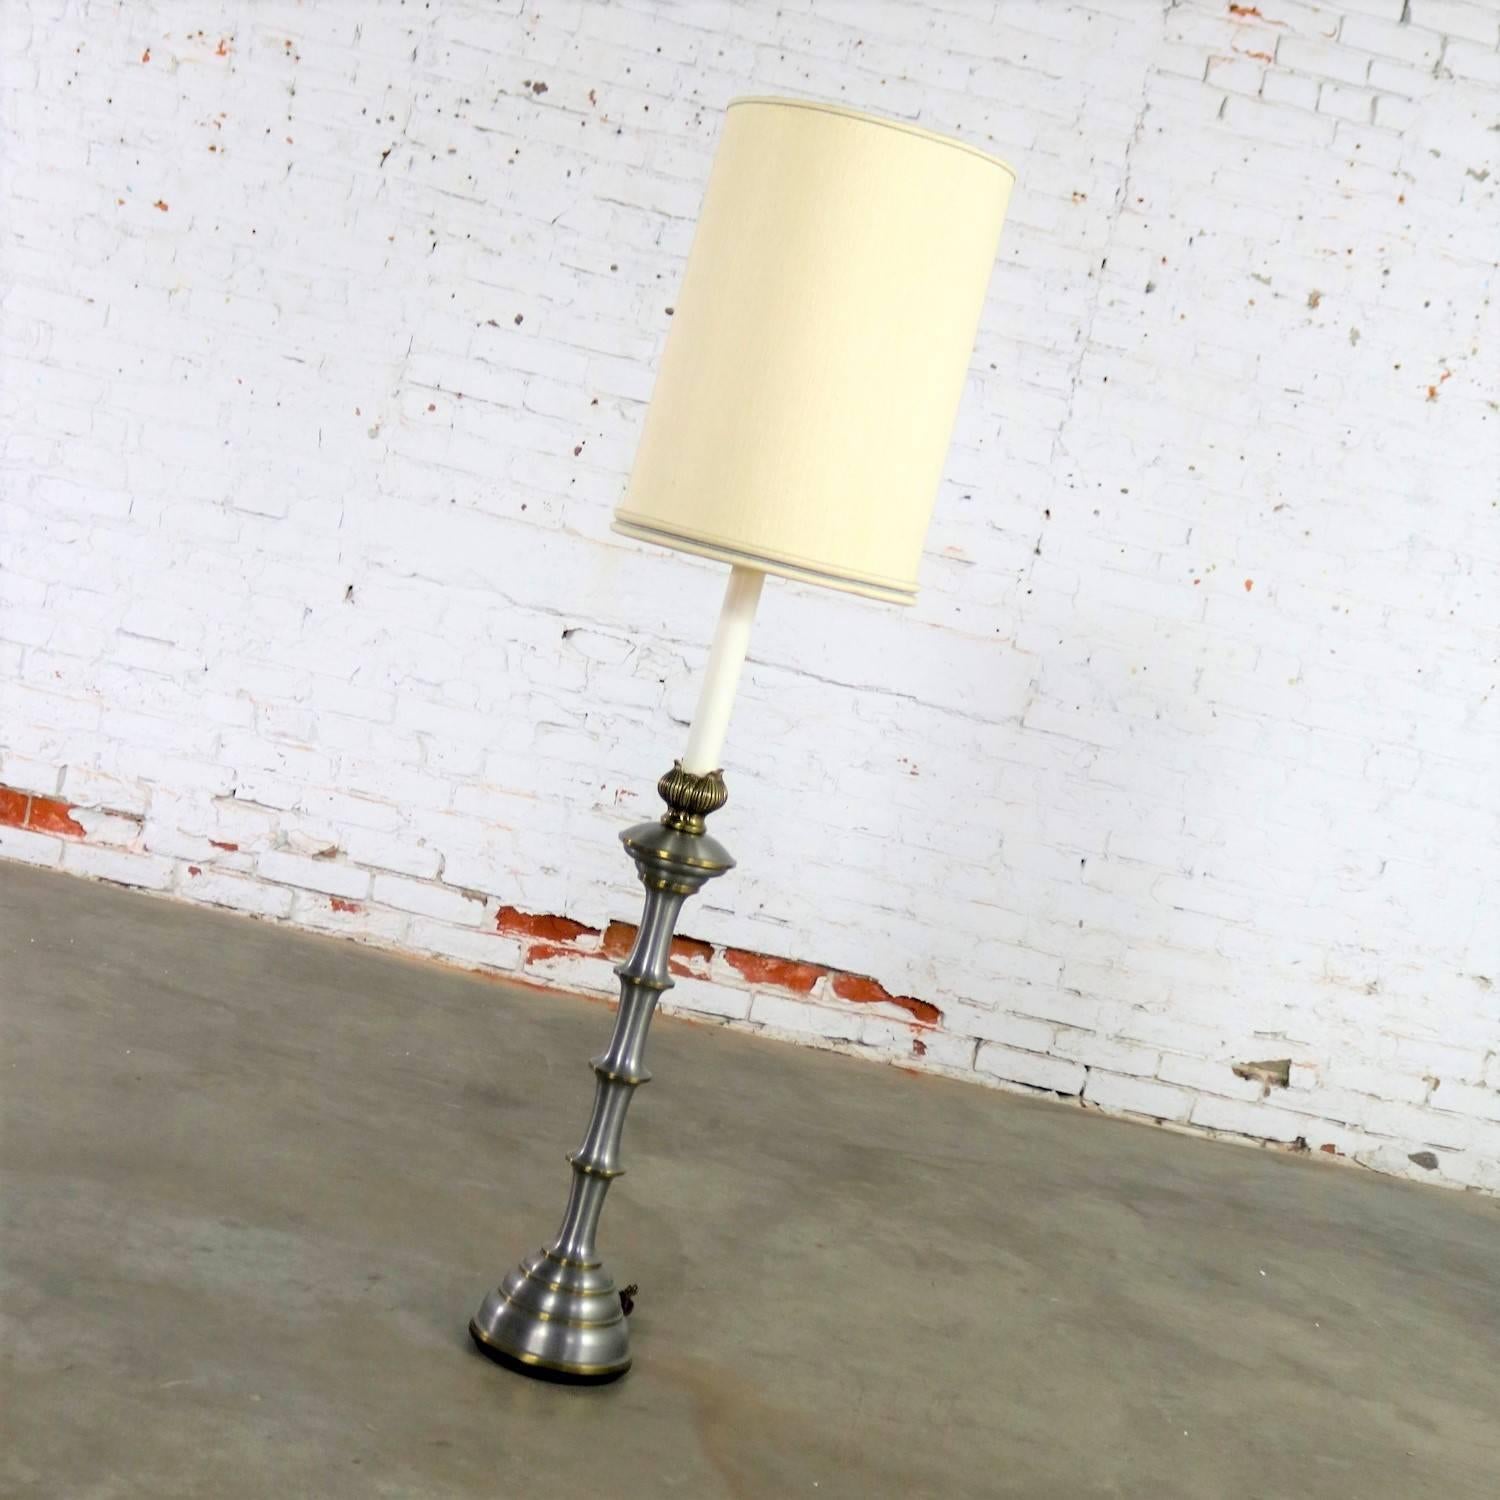 Die schöne und vielseitige Stiffel Lampe besteht aus Messing und gebürstetem Edelstahl. Sie kann als übergroße Tischleuchte oder als niedrigere Stehleuchte verwendet werden. Sie ist in fabelhaftem Vintage-Zustand und wird mit ihrem originalen